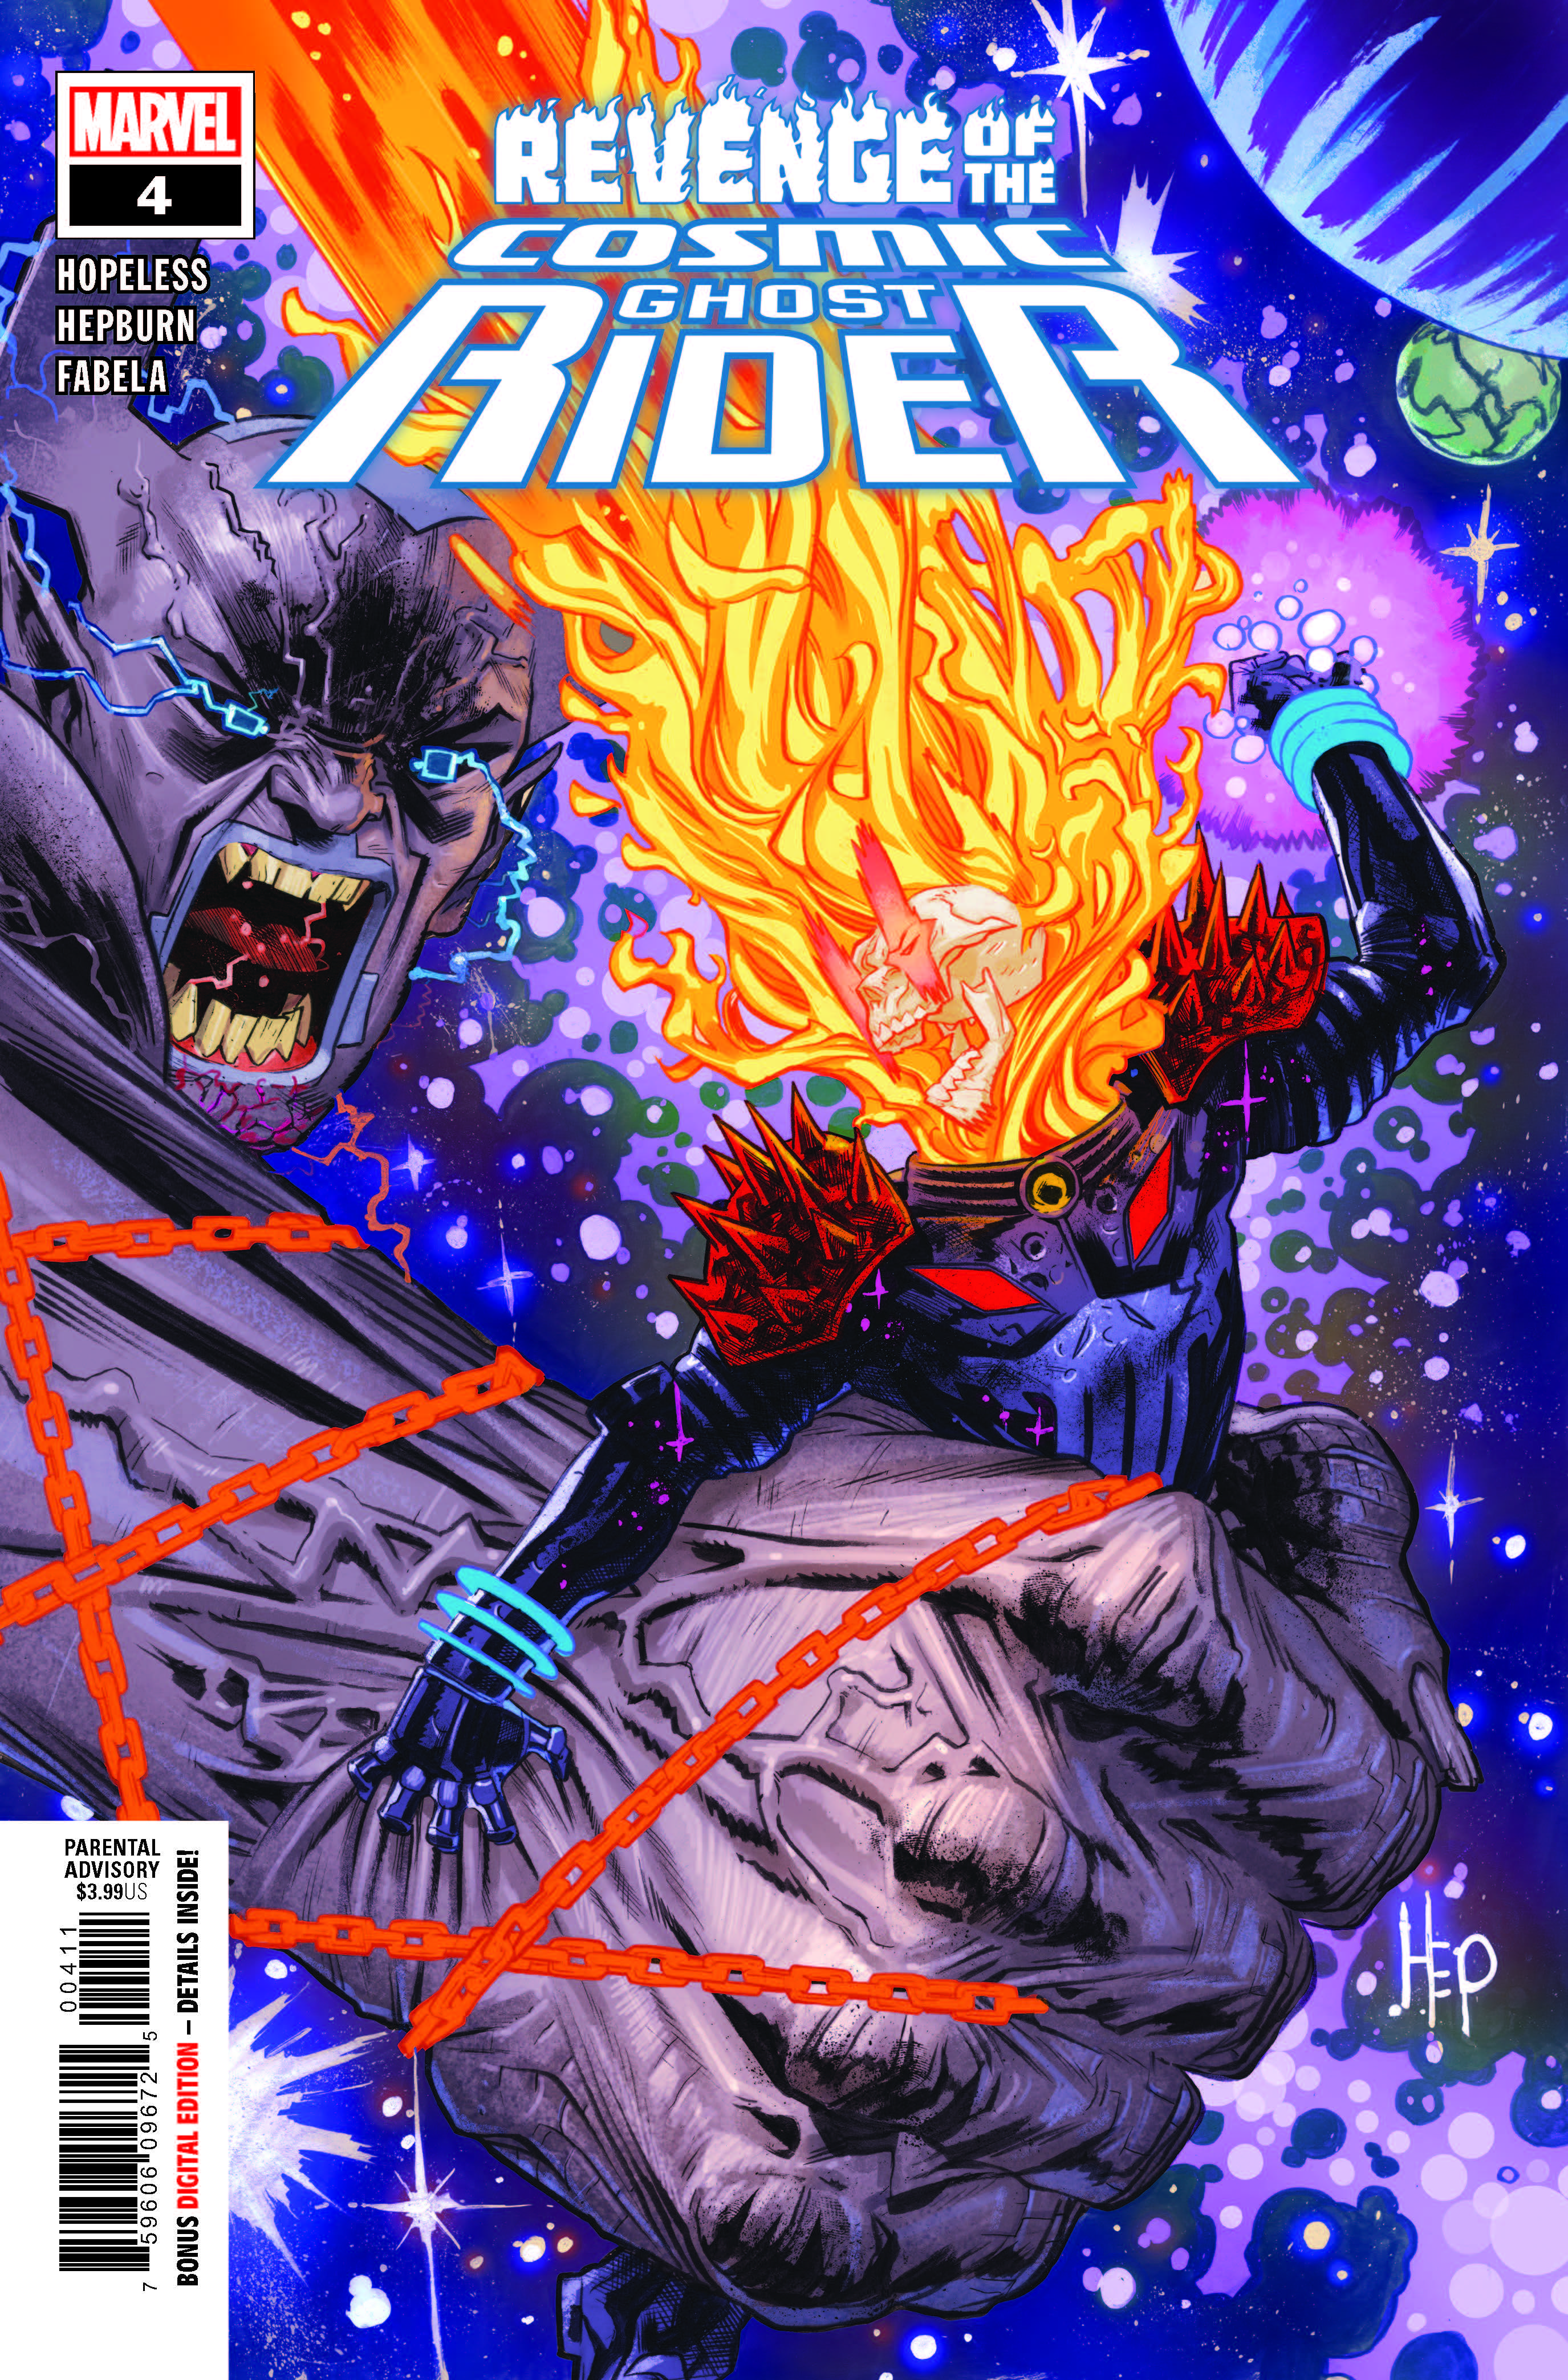 Revenge of Cosmic Ghost Rider #4 (Of 5)